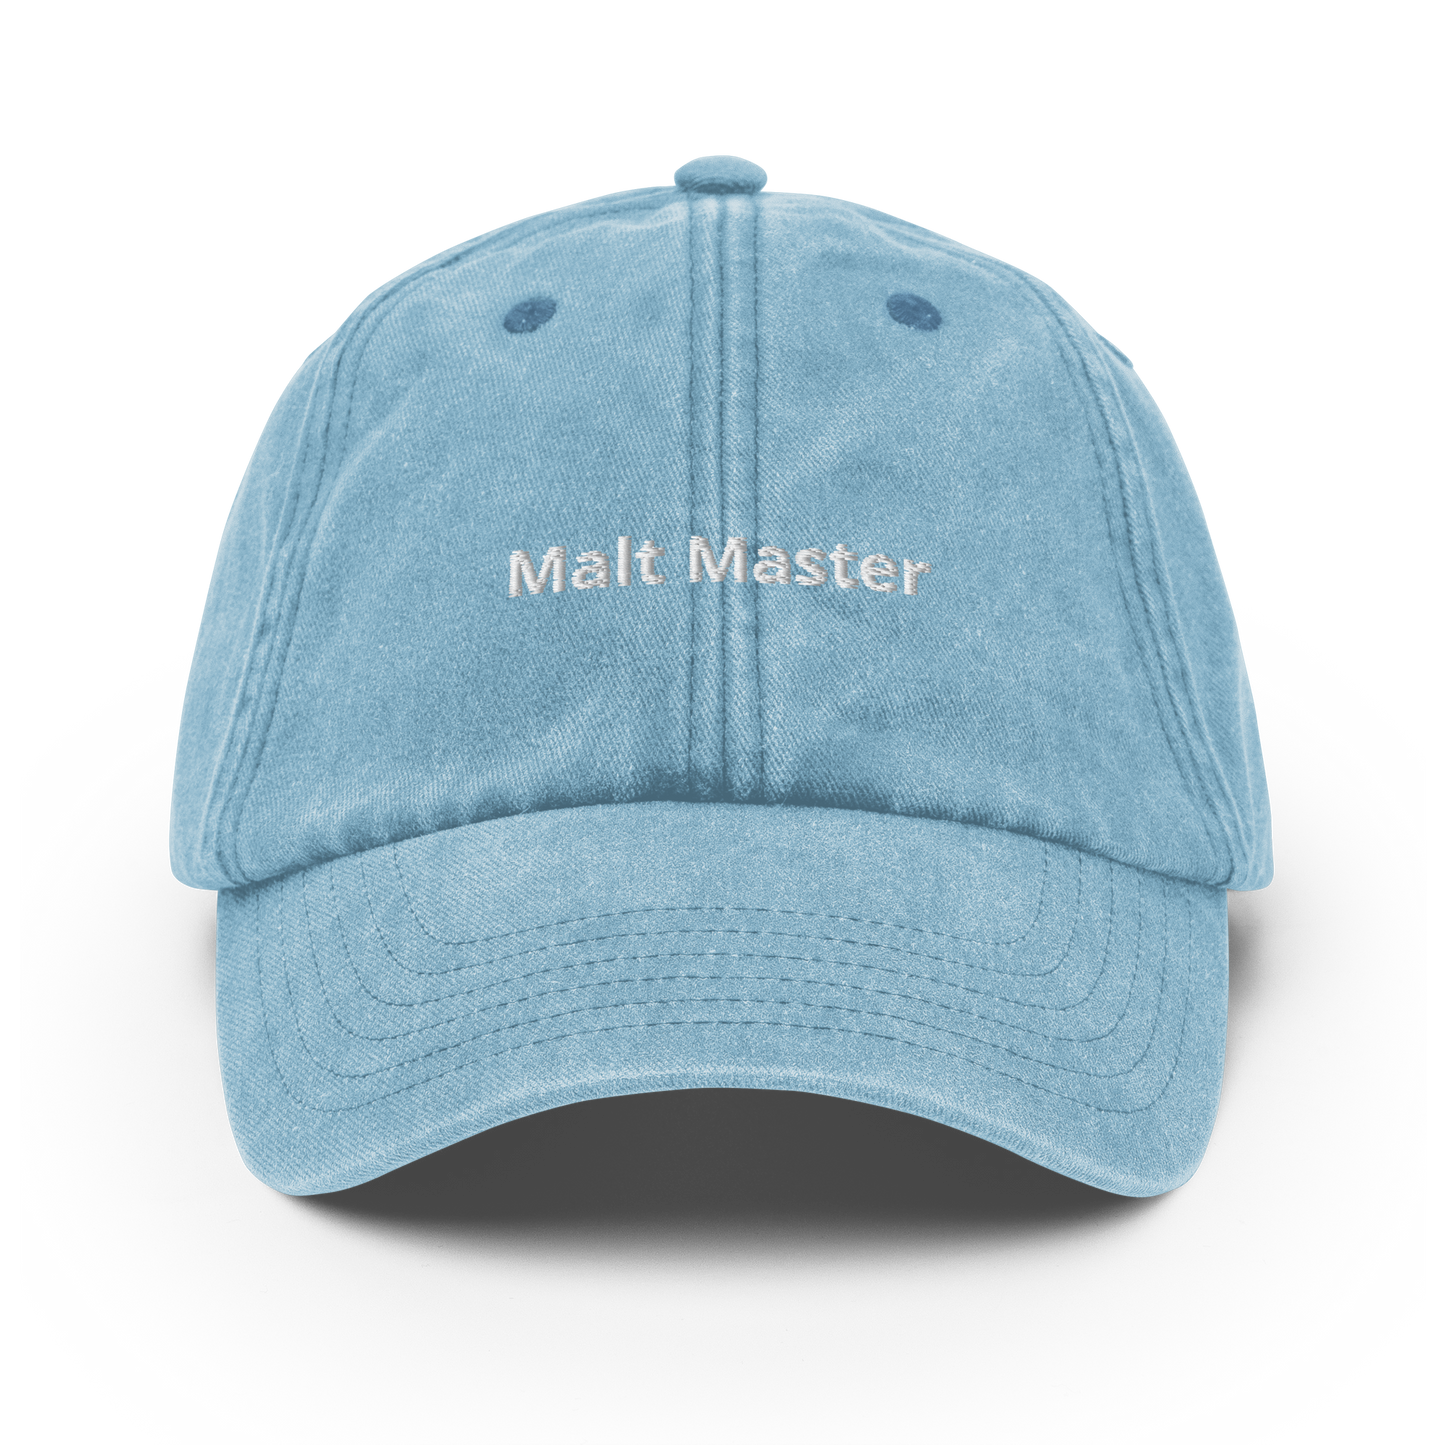 Malt Master - Vintage Hat